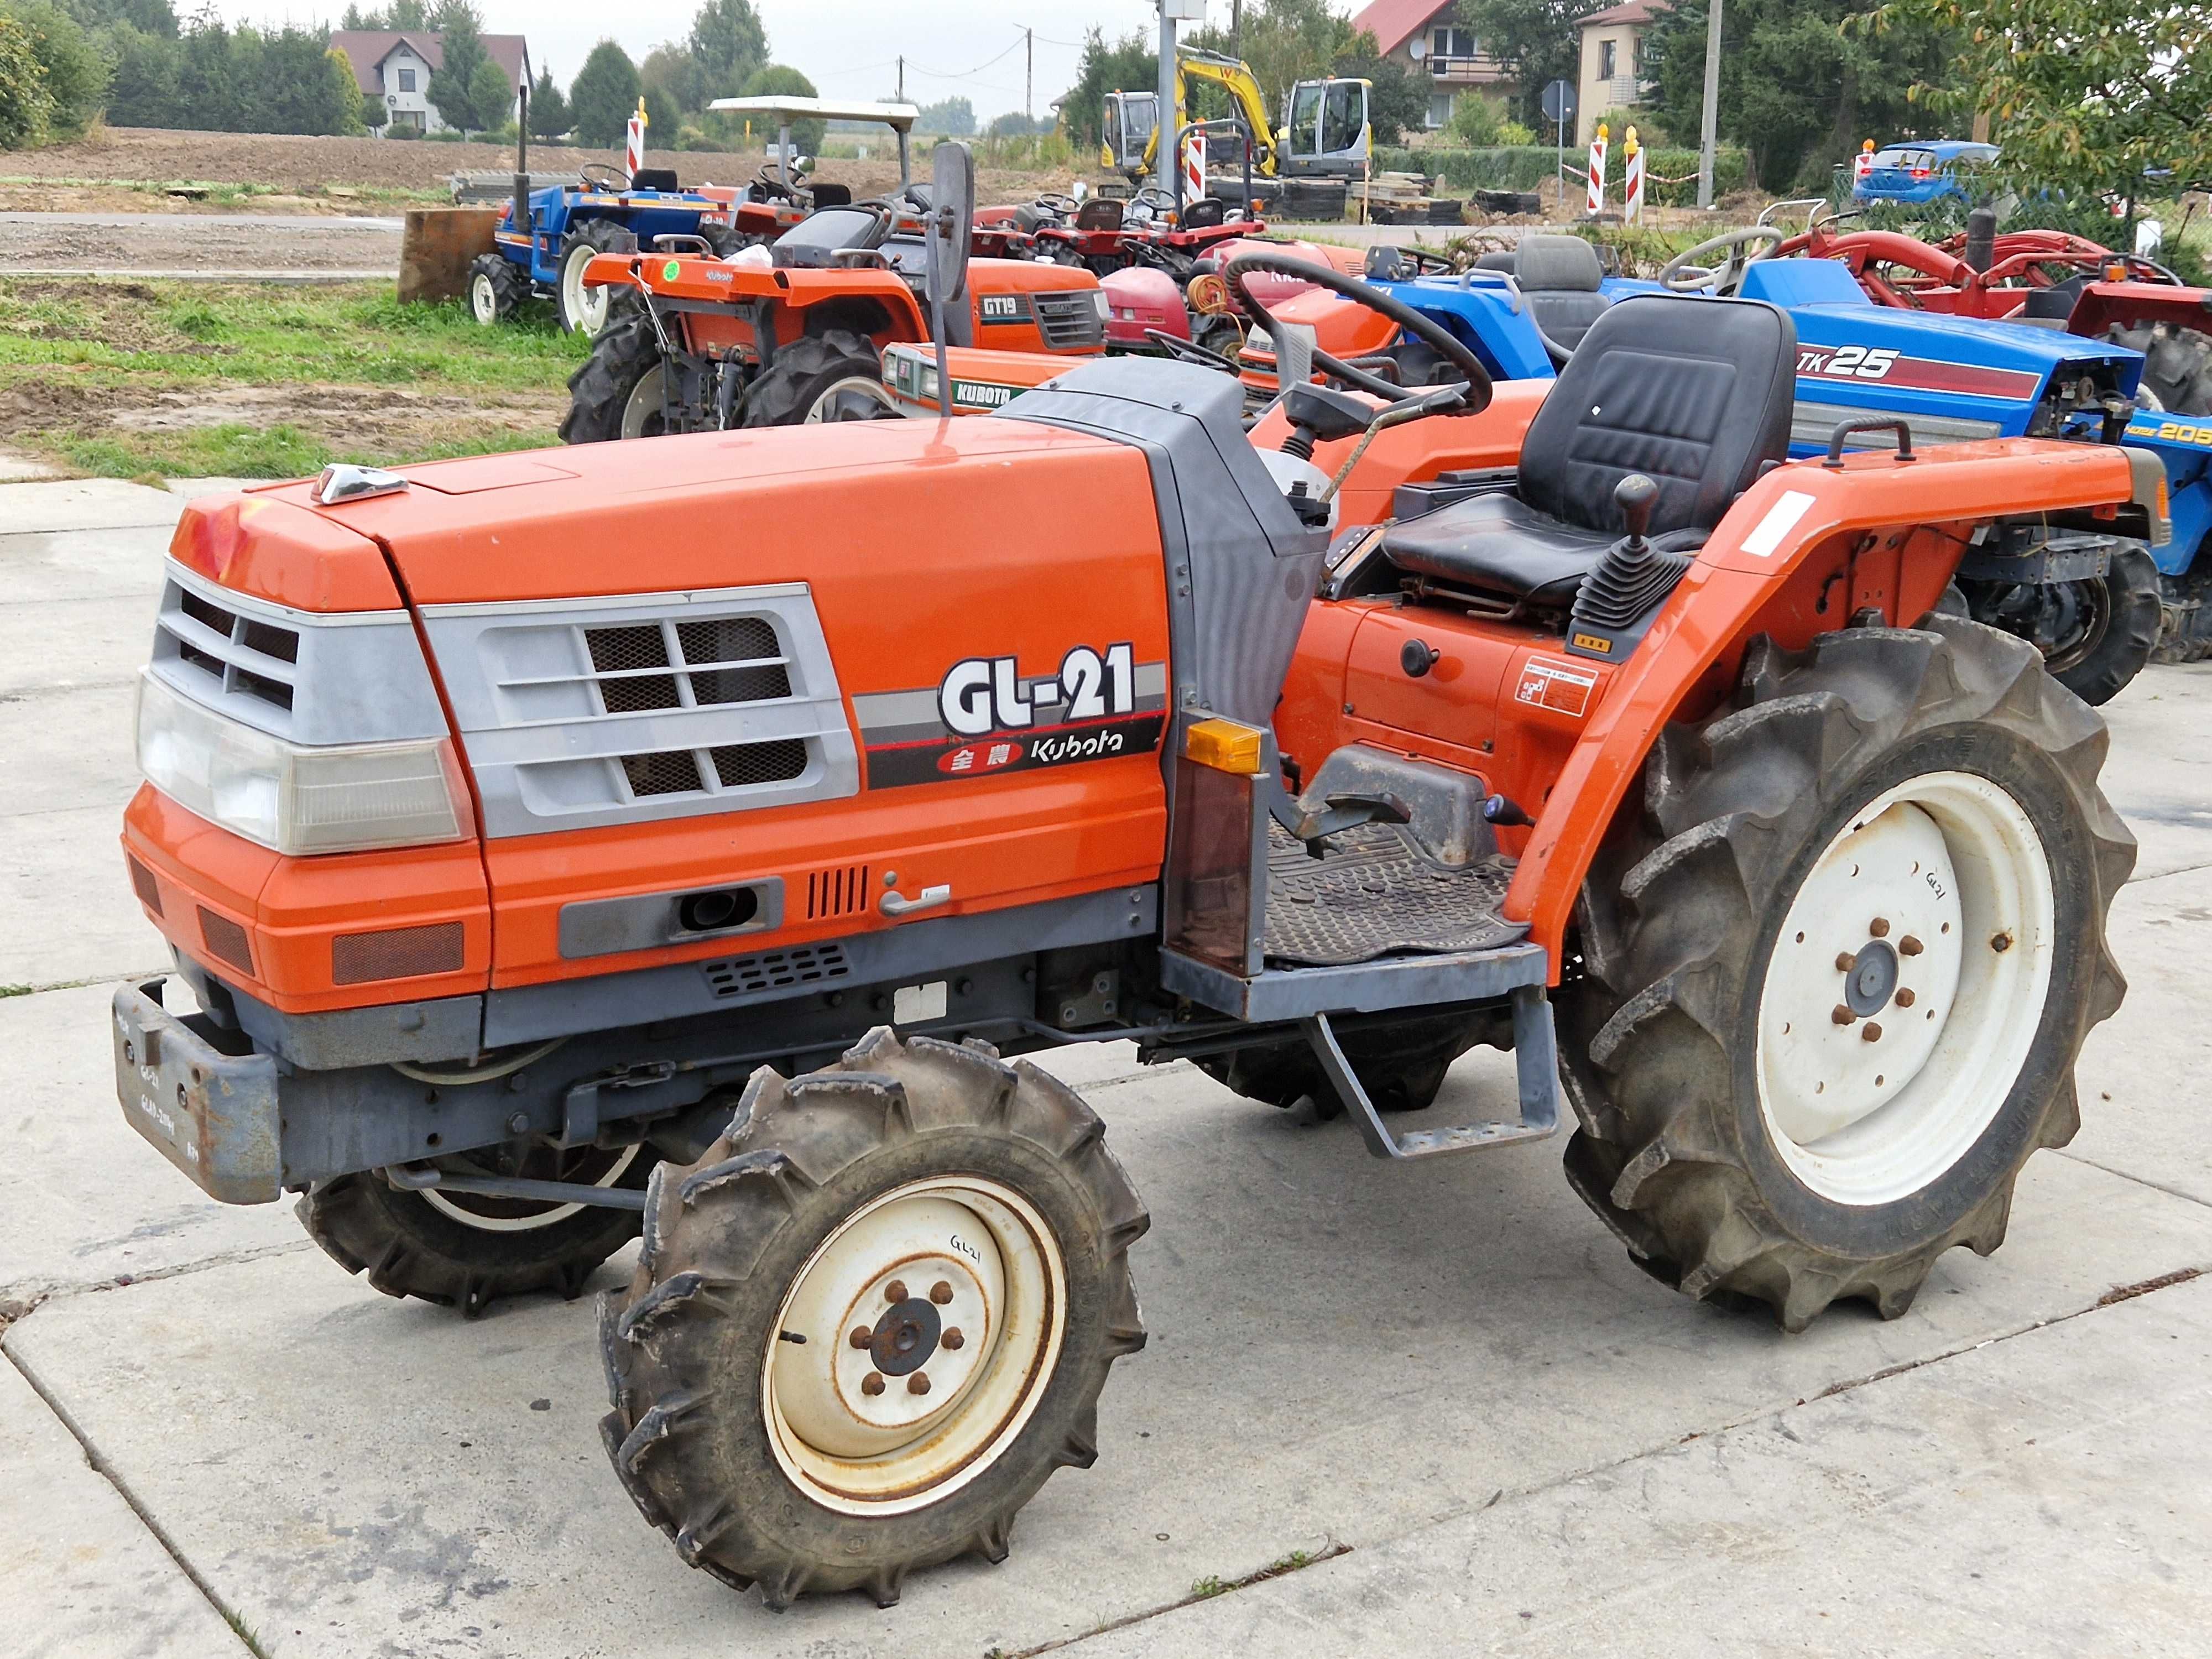 Traktorek japoński Kubota GL21 21KM wspomaganie rewers 4x4